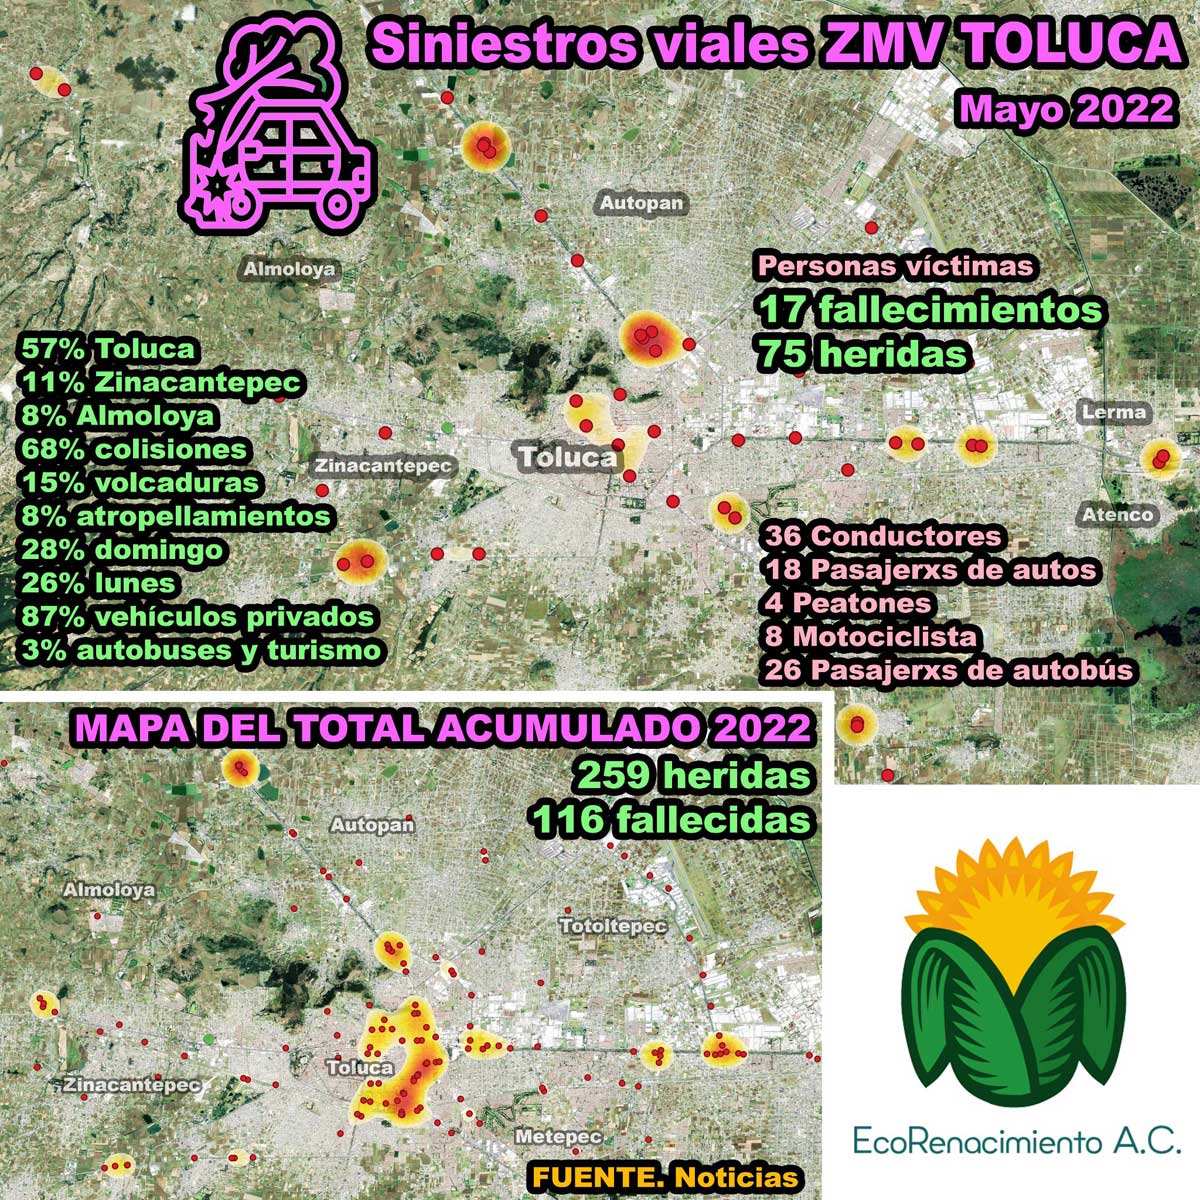 Estadística de accidentes en vialidades del Valle de Toluca